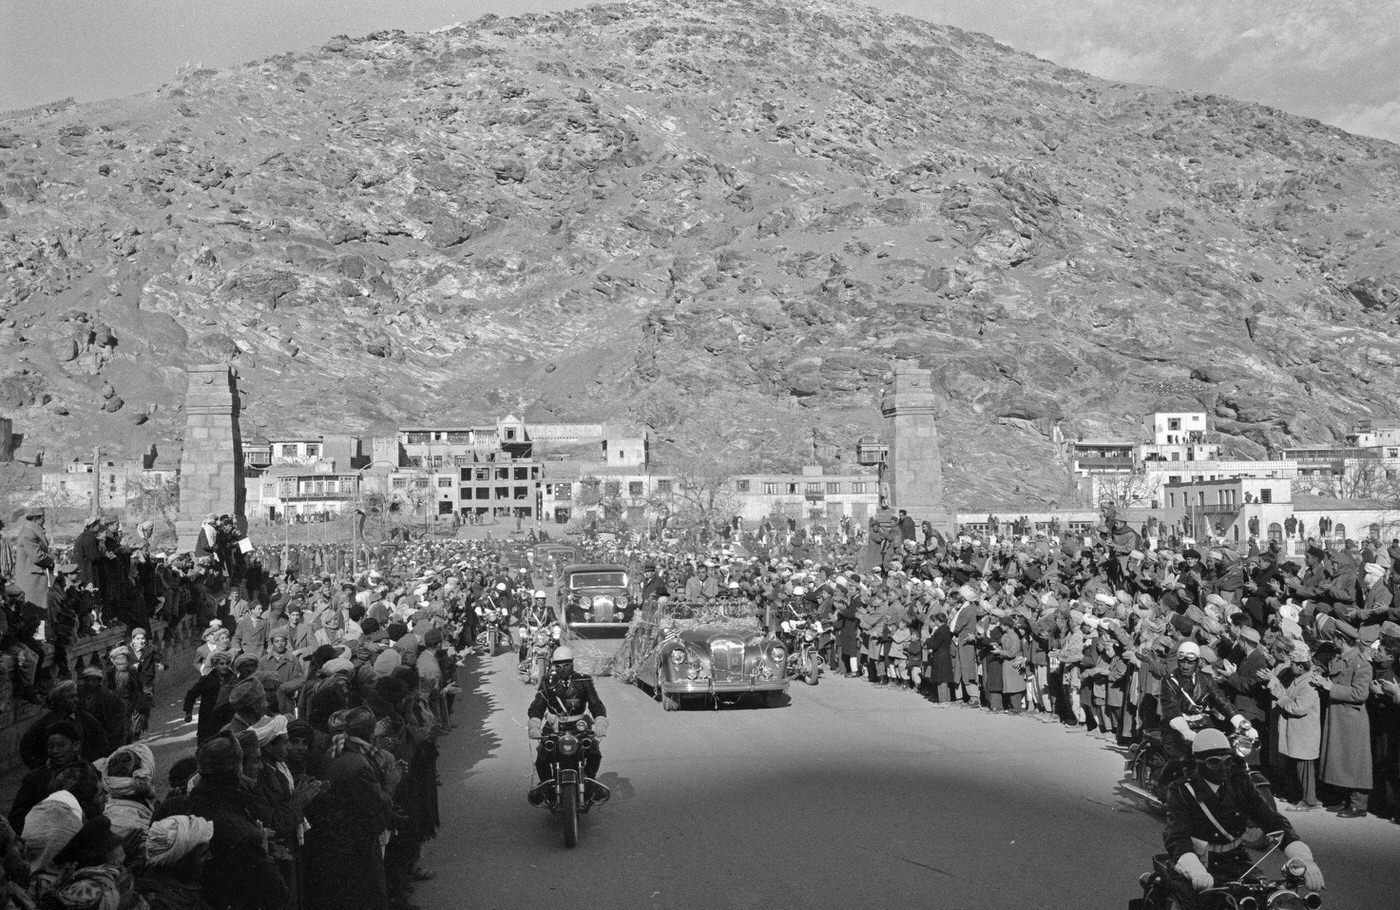 Motorcade for President Eisenhower's visit to Kabul, 1959.